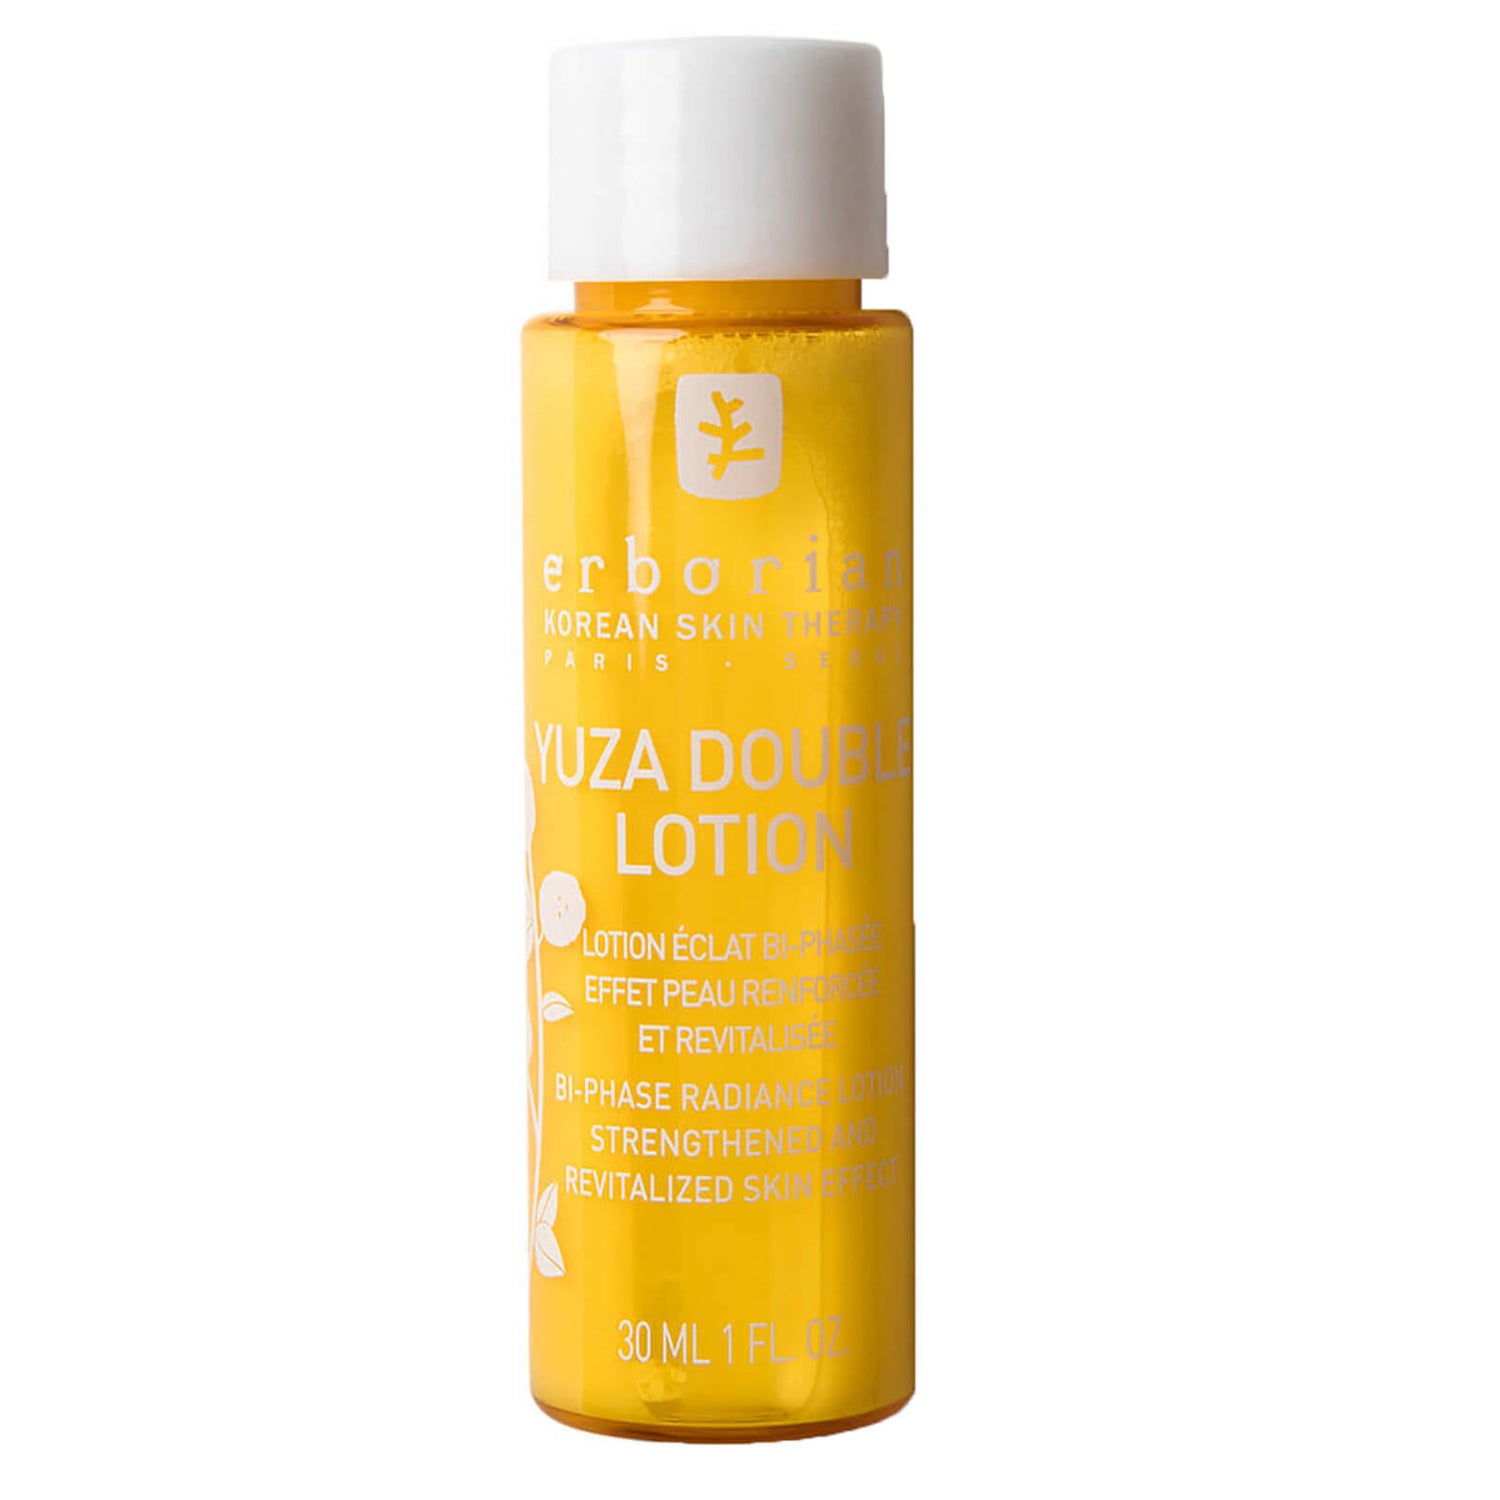 Yuza Double Lotion - 30 ml - Detergente viso purificante delicato